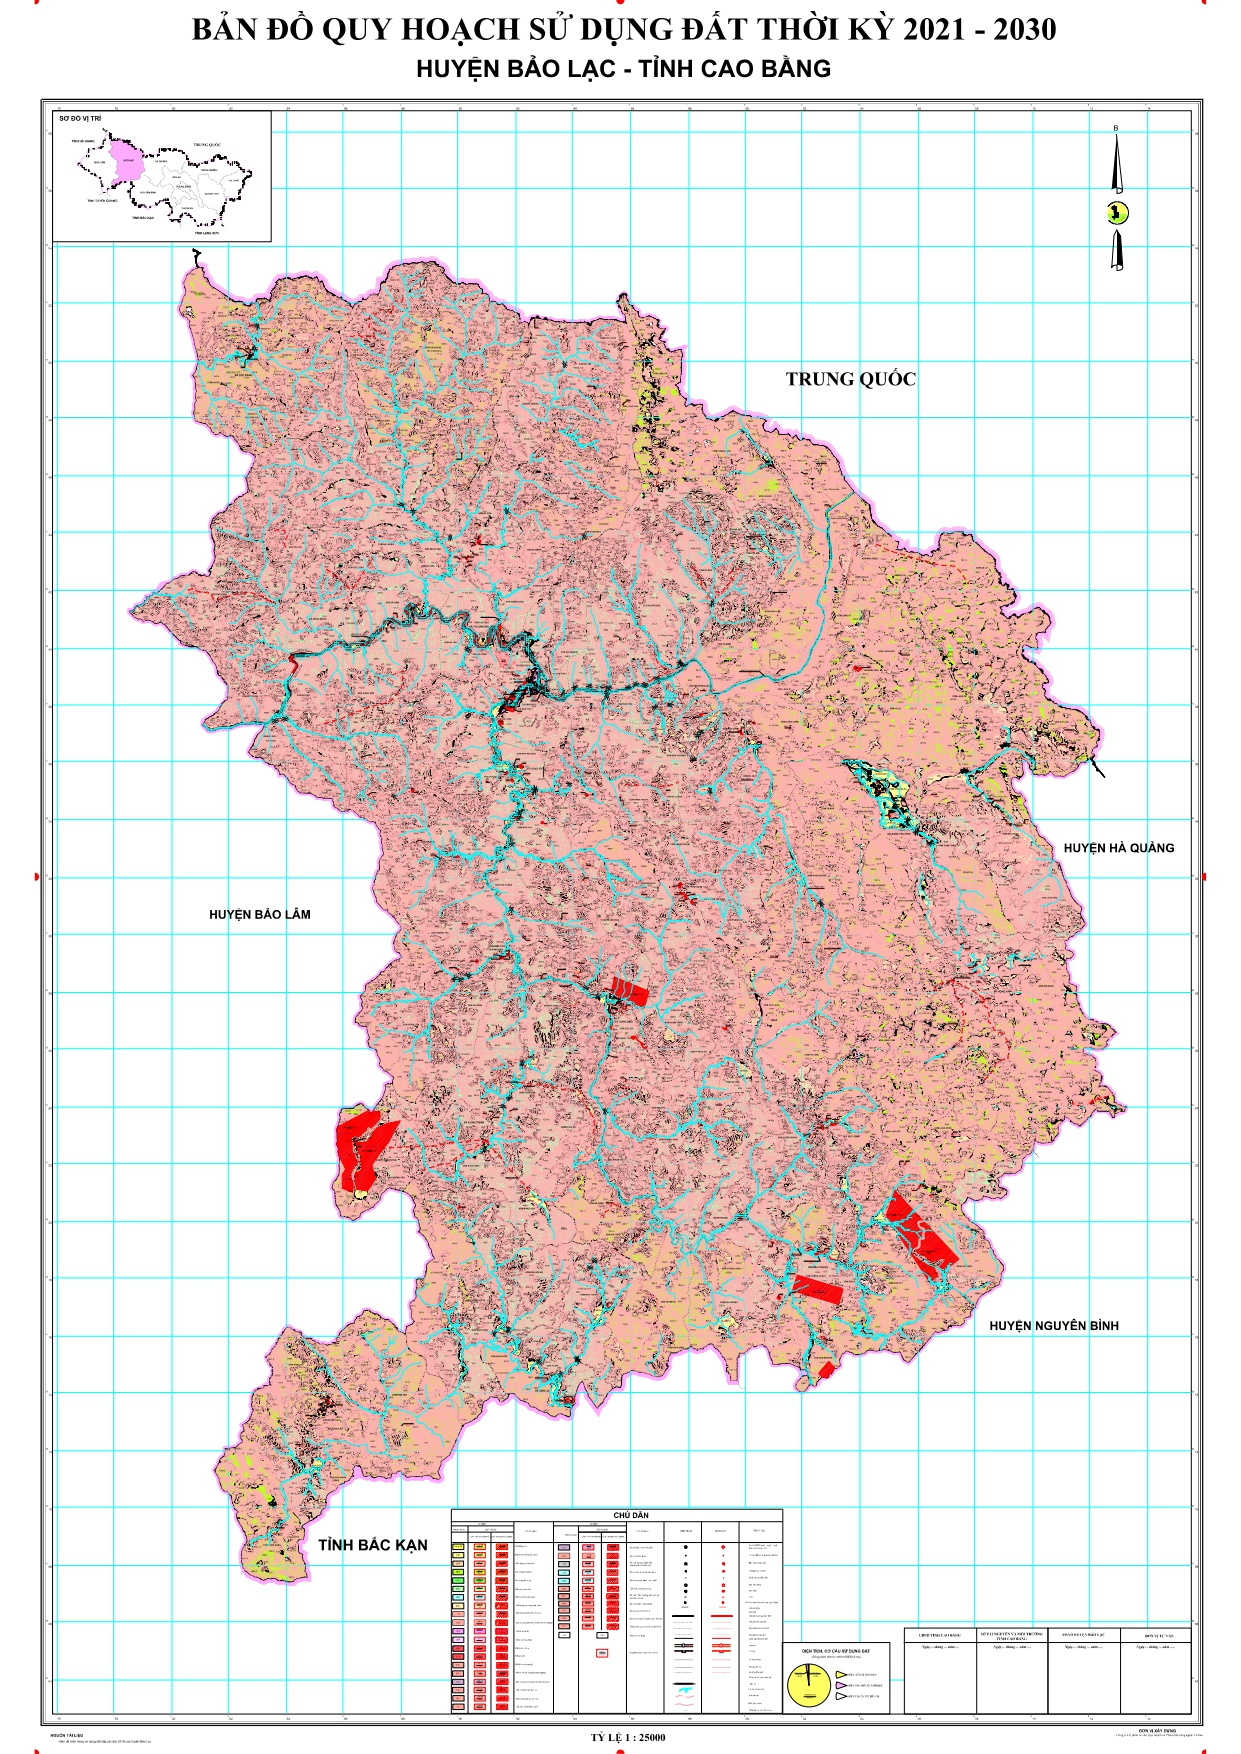 Bản đồ quy hoạch Huyện Bảo Lạc – Tỉnh Cao Bằng